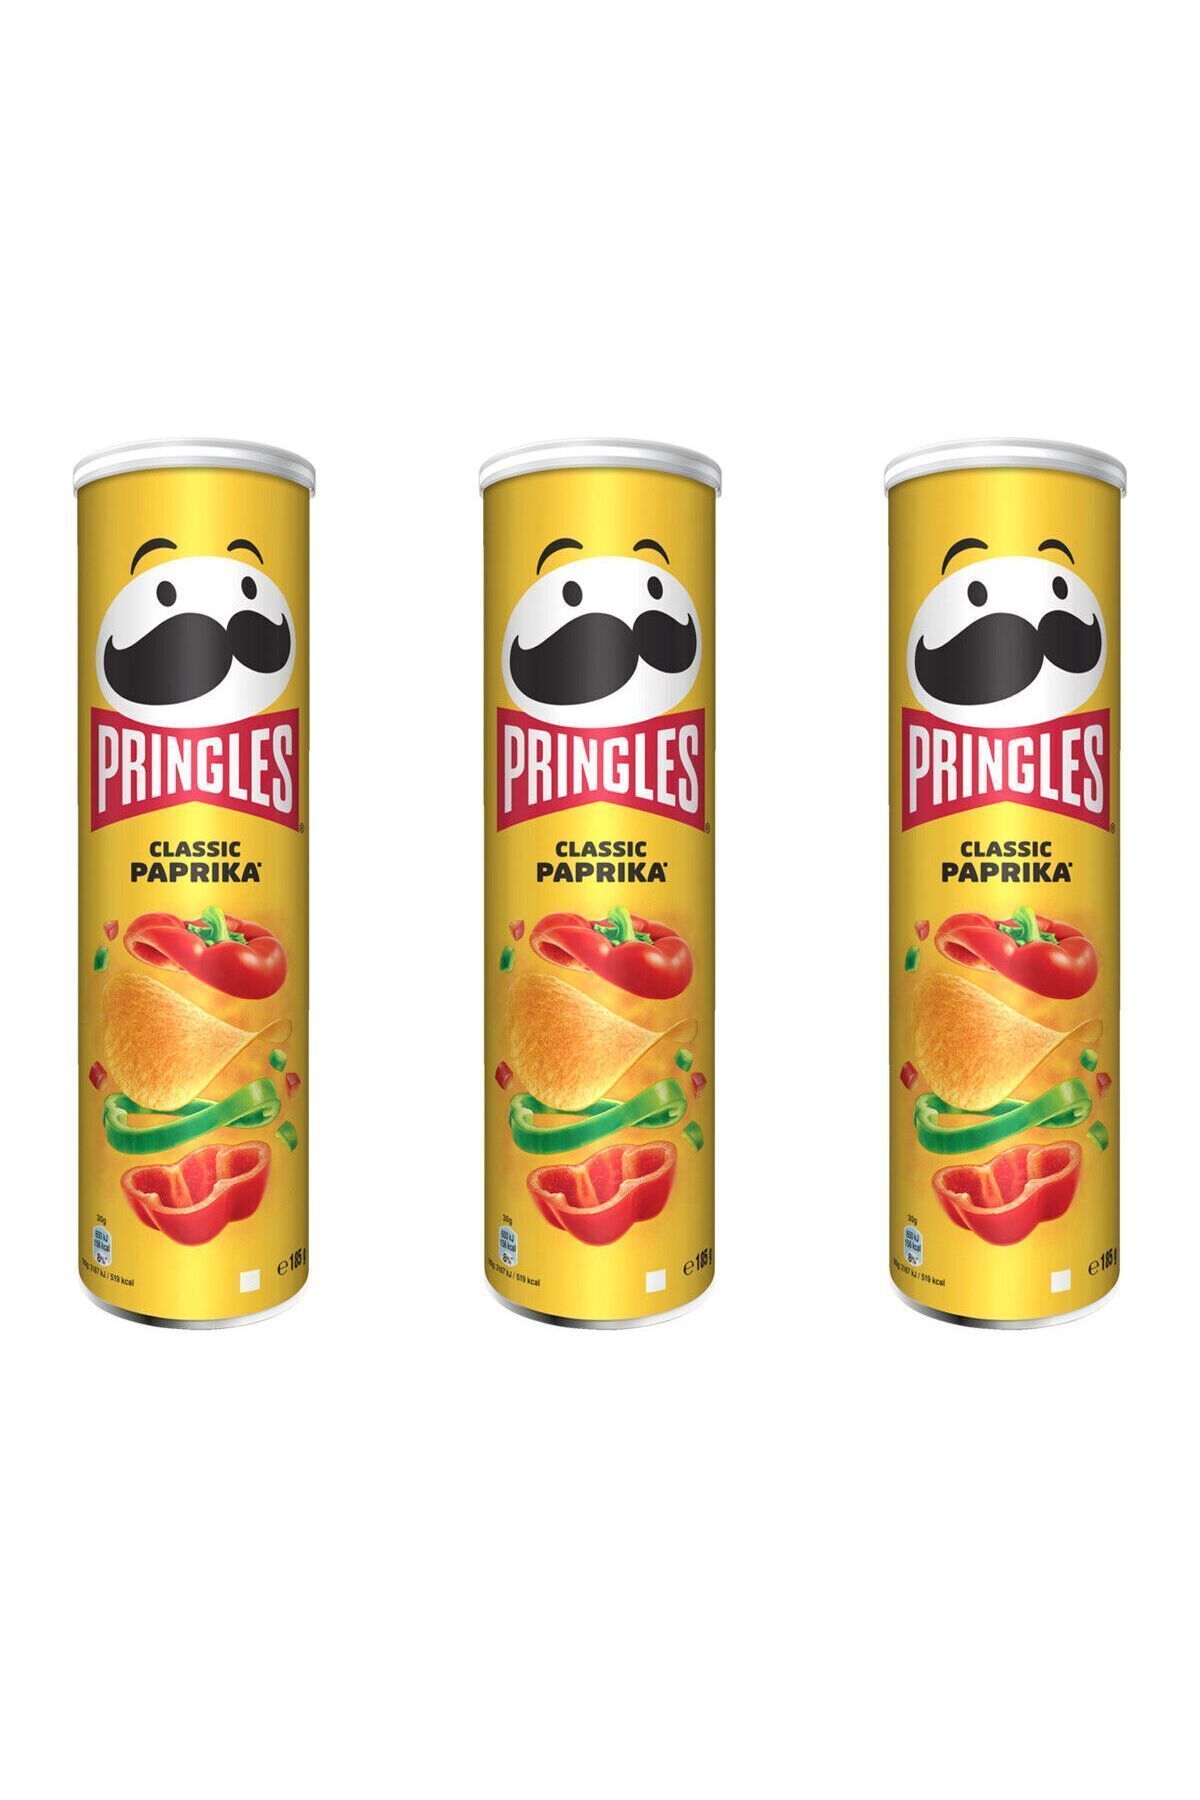 Pringles classic paprika 185g